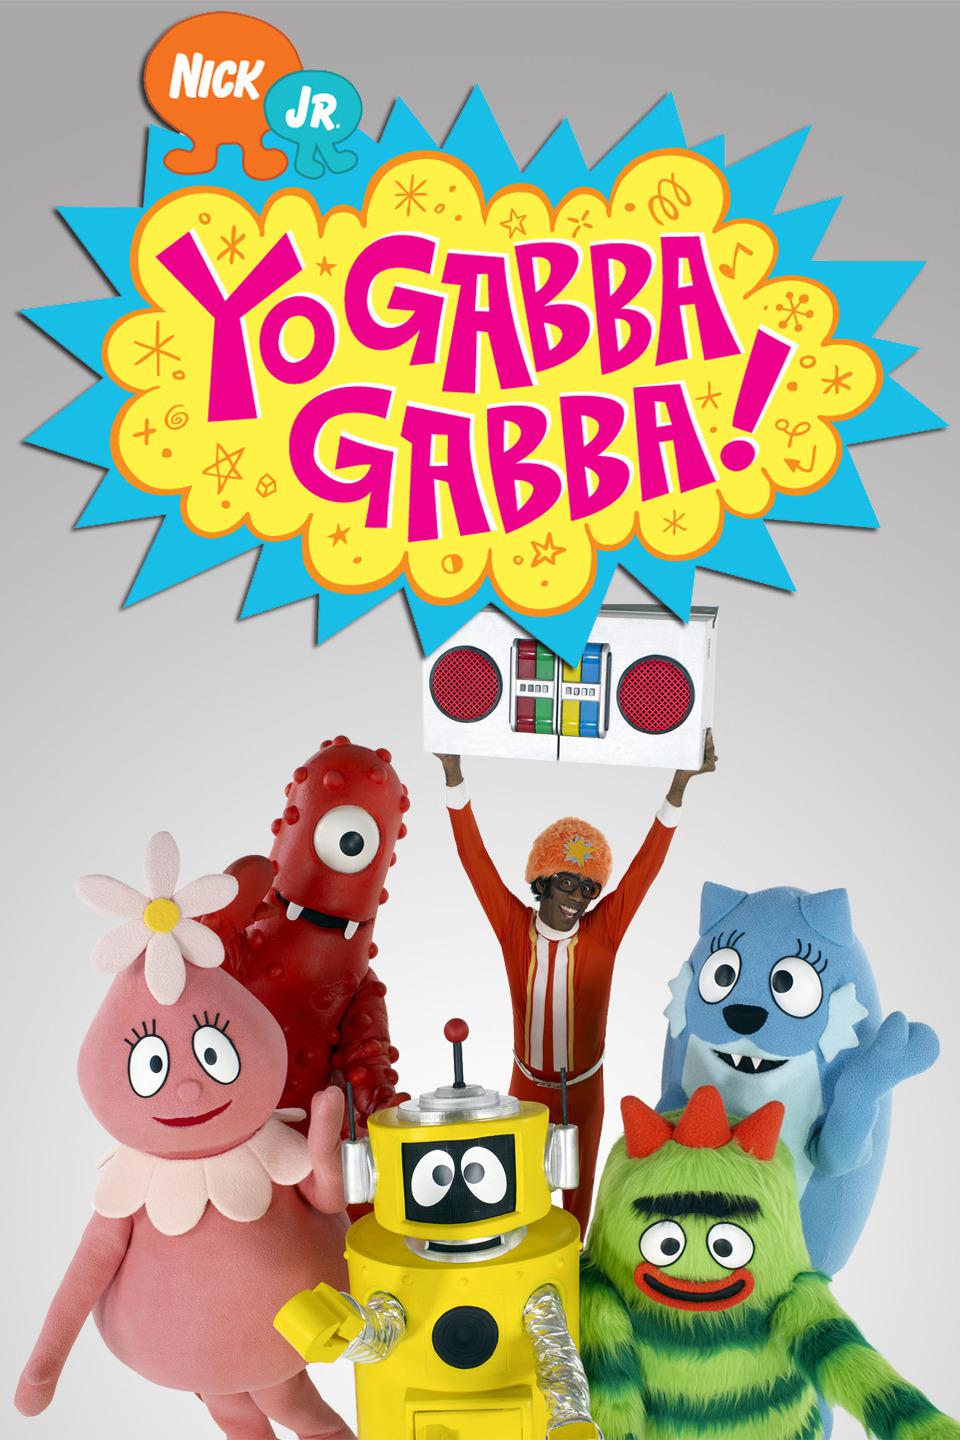 TV ratings for Yo Gabba Gabba! in India. Nick Jr. TV series